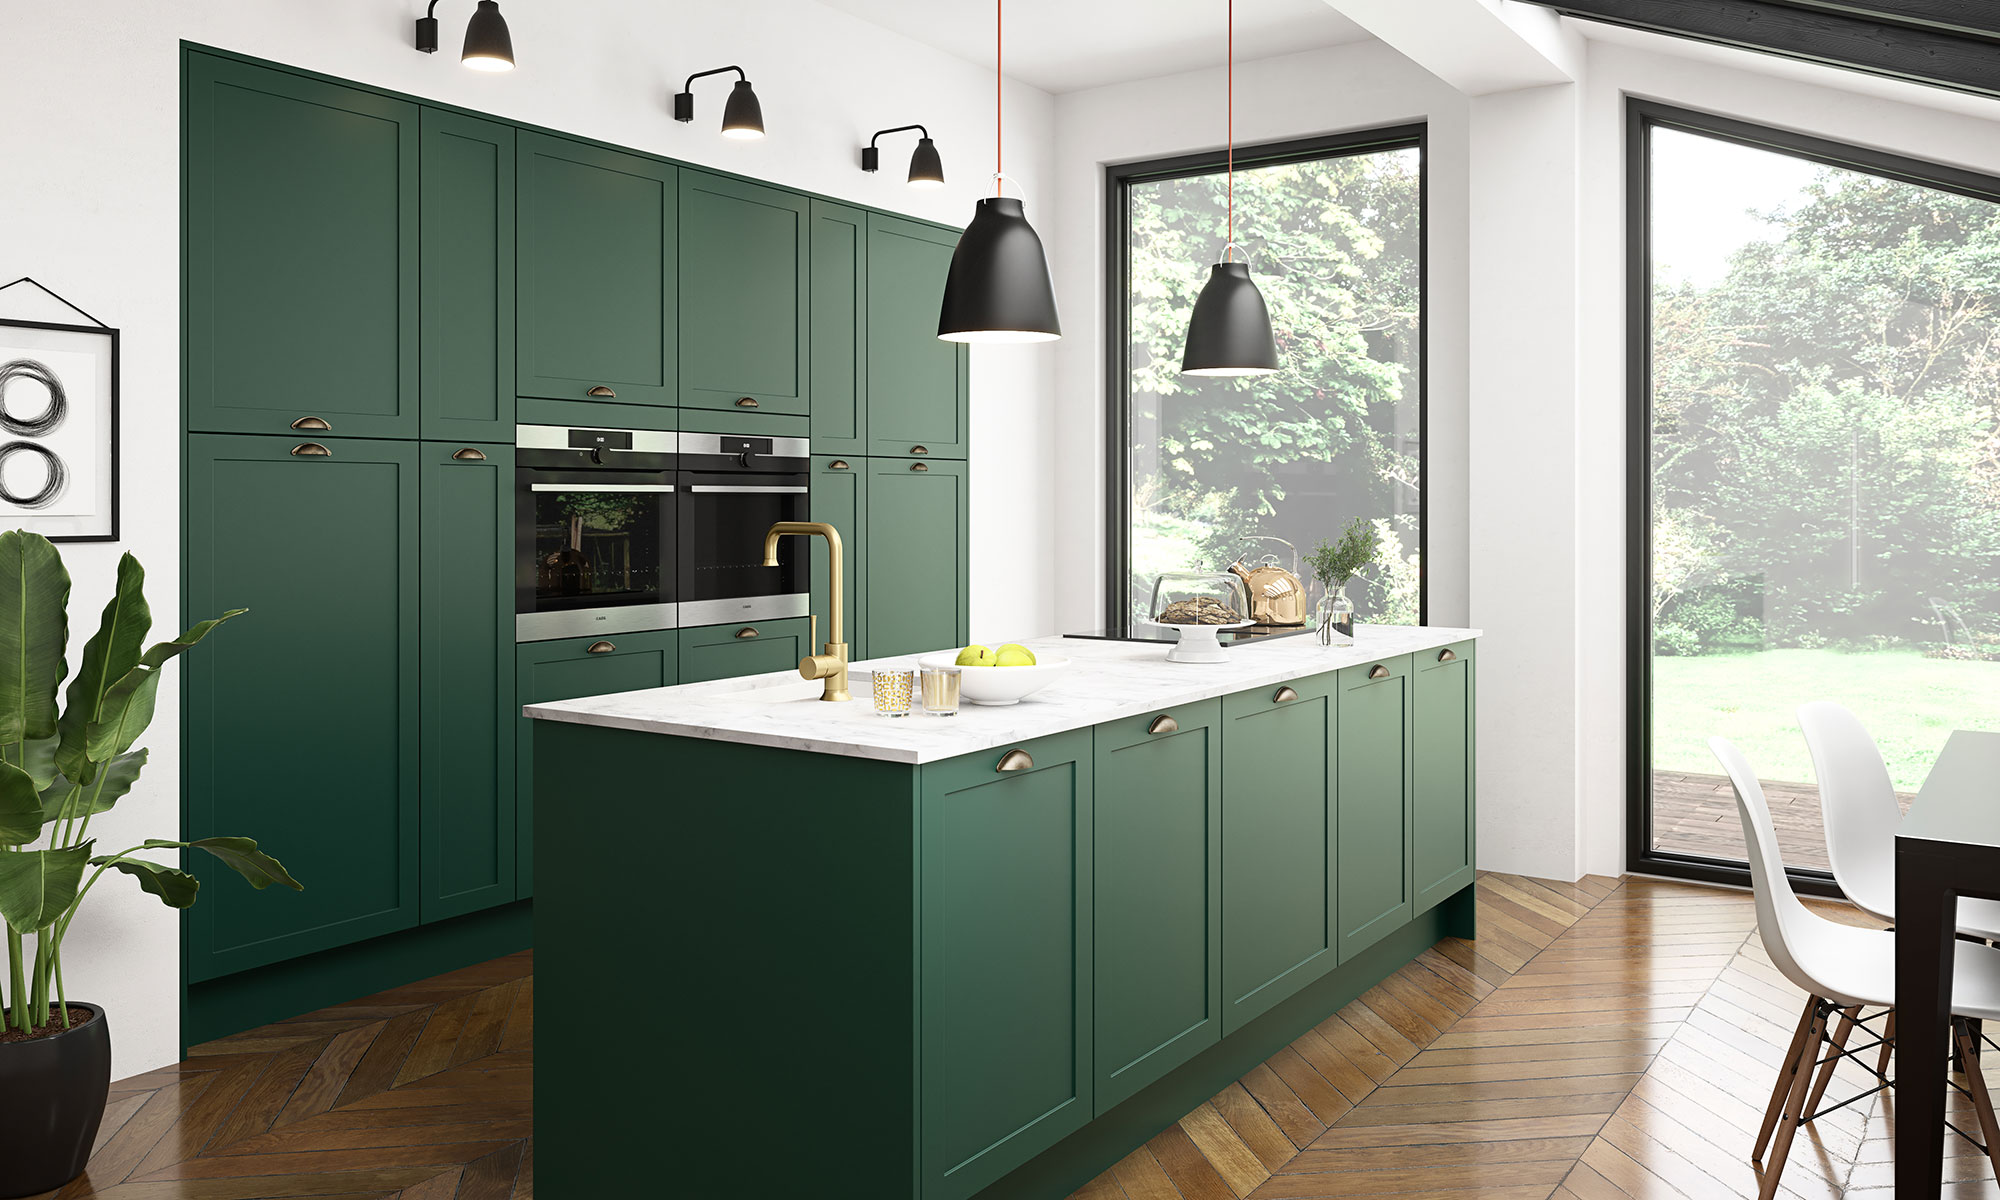 Diseño de cocinas verdes - protagonizadas por el verde botella